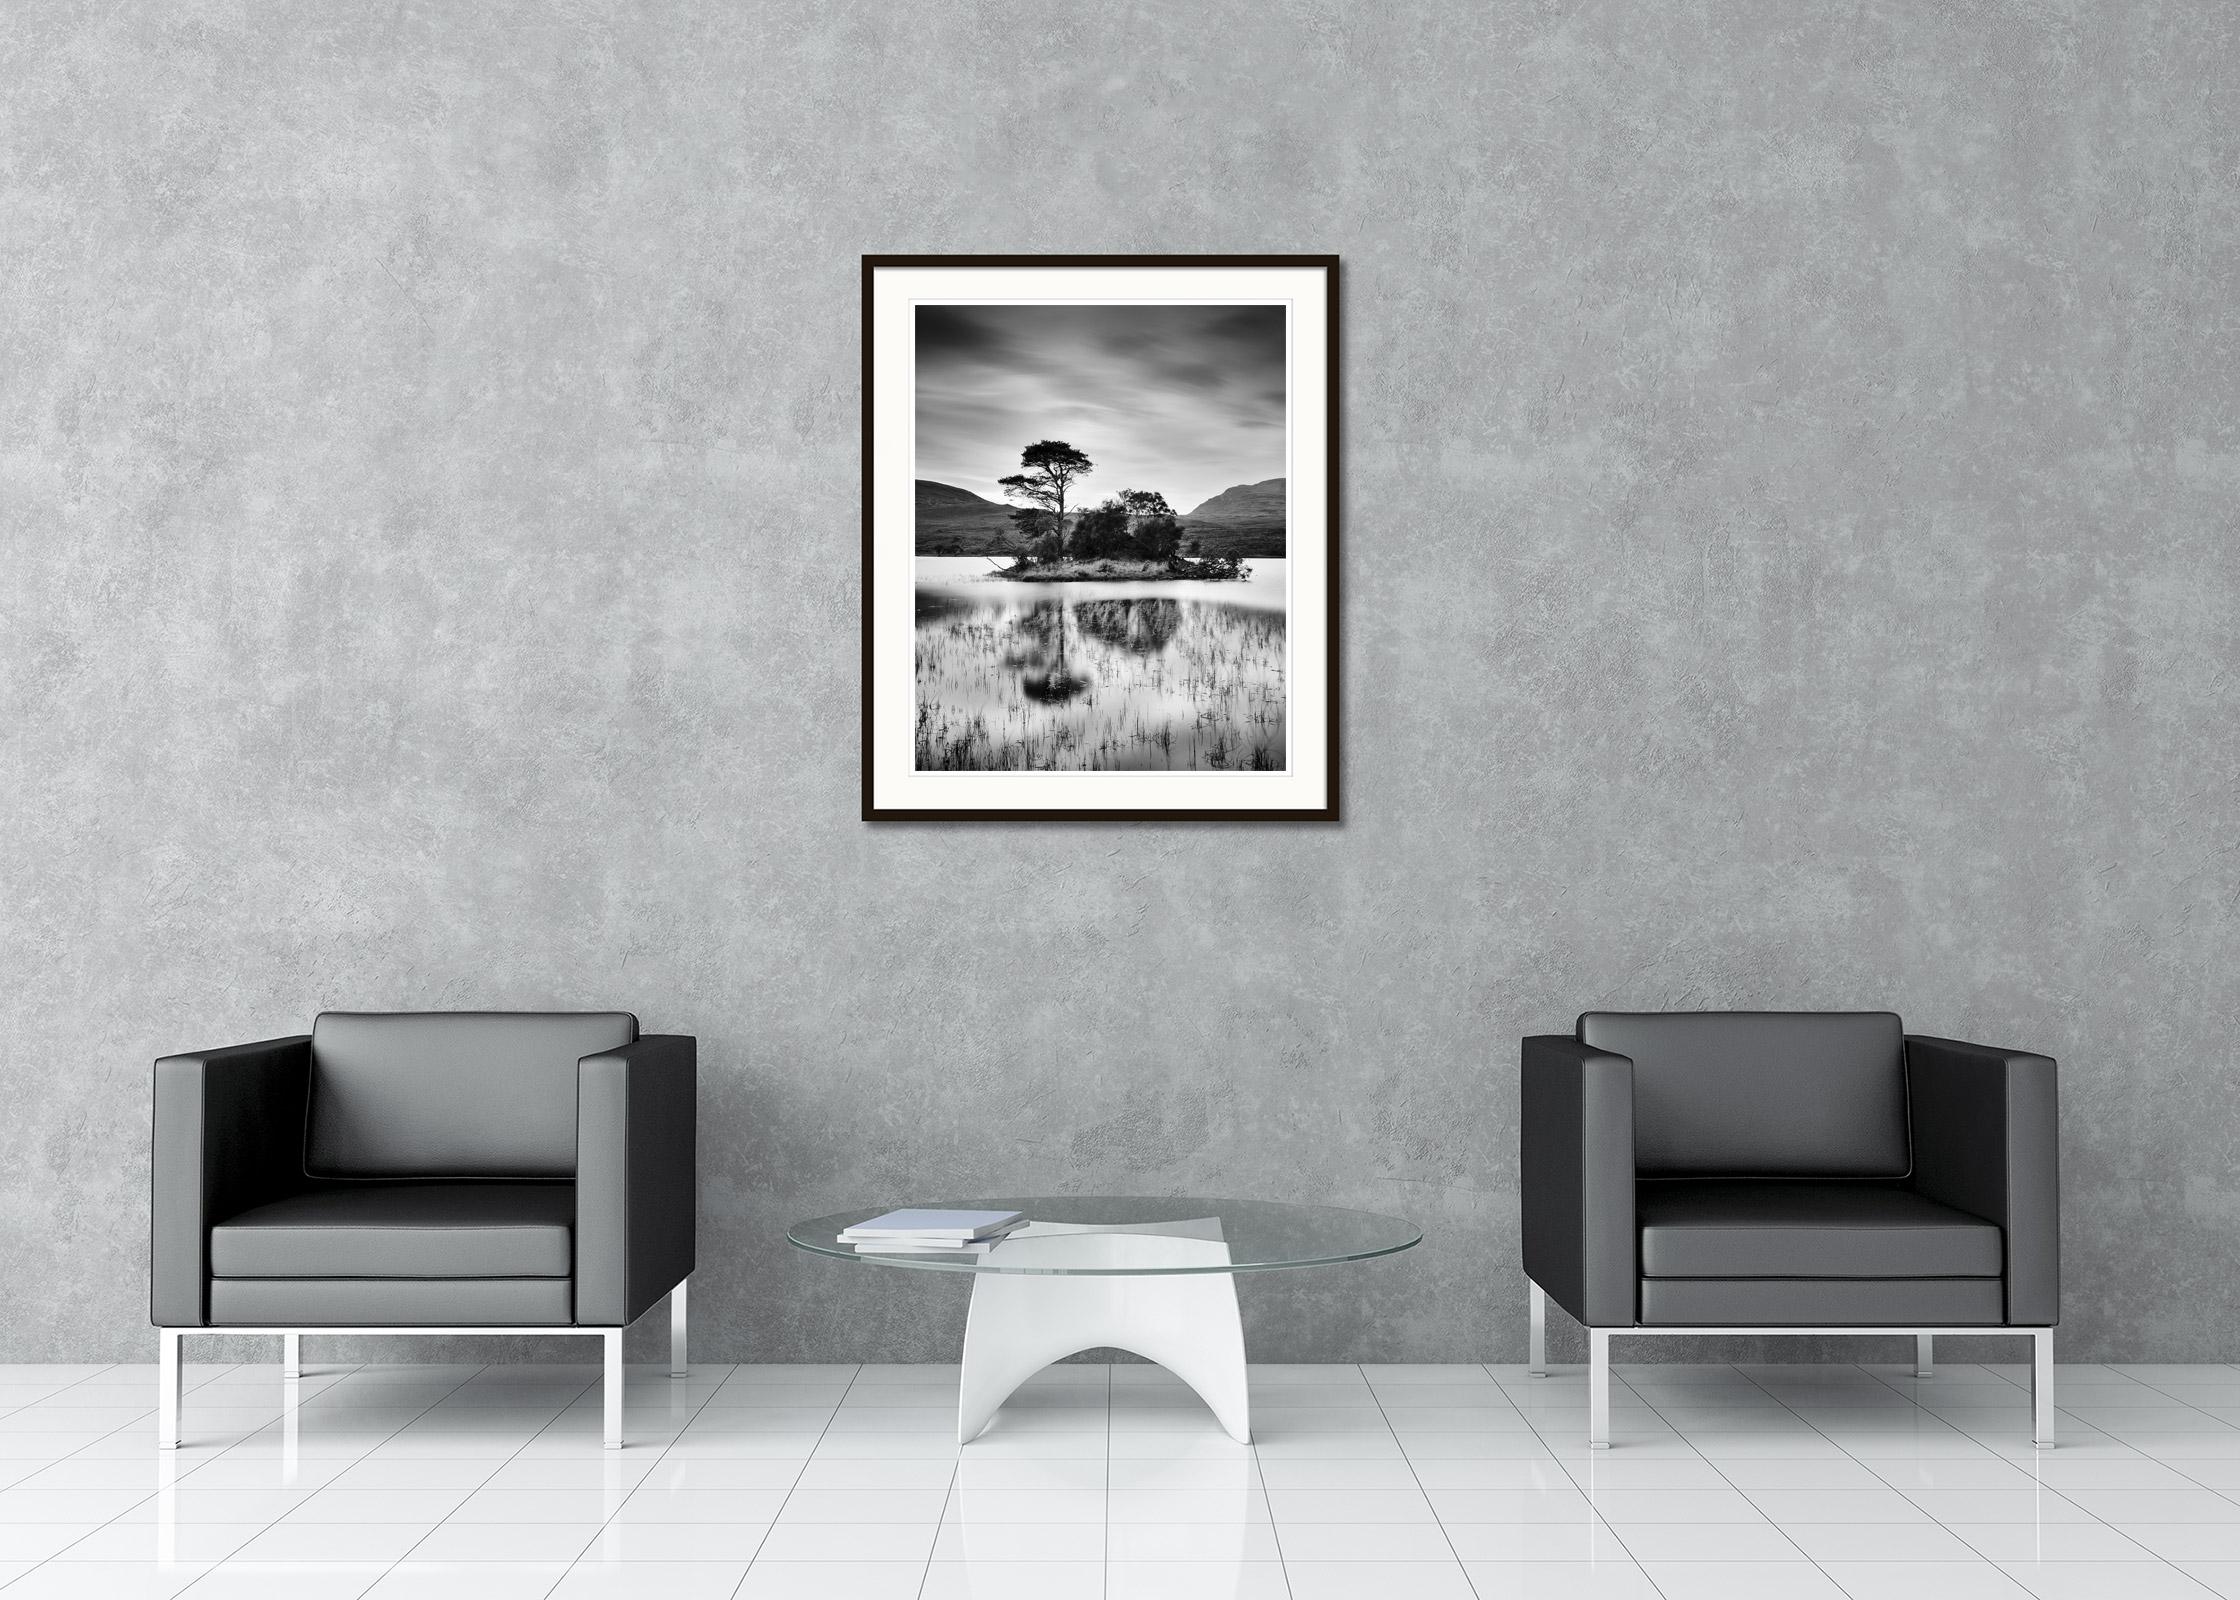 Schwarz-Weiß-Fotografie mit Langzeitbelichtung von Meereslandschaften - Landschaftsfotografie. Insel mit Bäumen auf einem kleinen Bergsee in den schottischen Highlands bei Sonnenuntergang. Pigmenttintendruck, Auflage: 15 Stück. Signiert, betitelt,